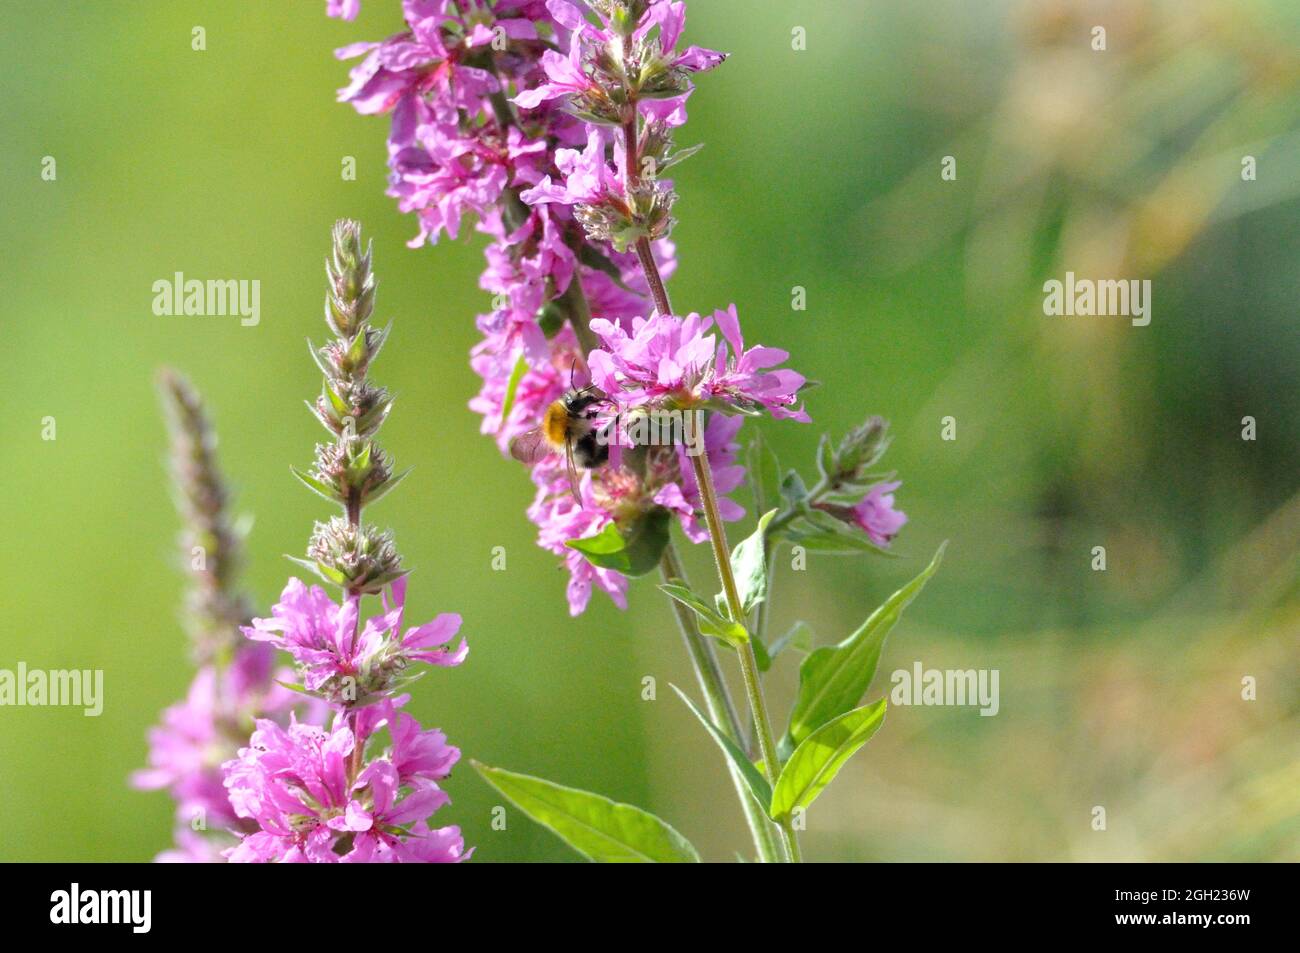 Gewöhnlicher Blutweiderich (Lythrum salicaria) im Garten an einem künstlichen Gartenteich lädt Insekten (hier Bienen) zum Naschen ein. - Purple looses Stock Photo